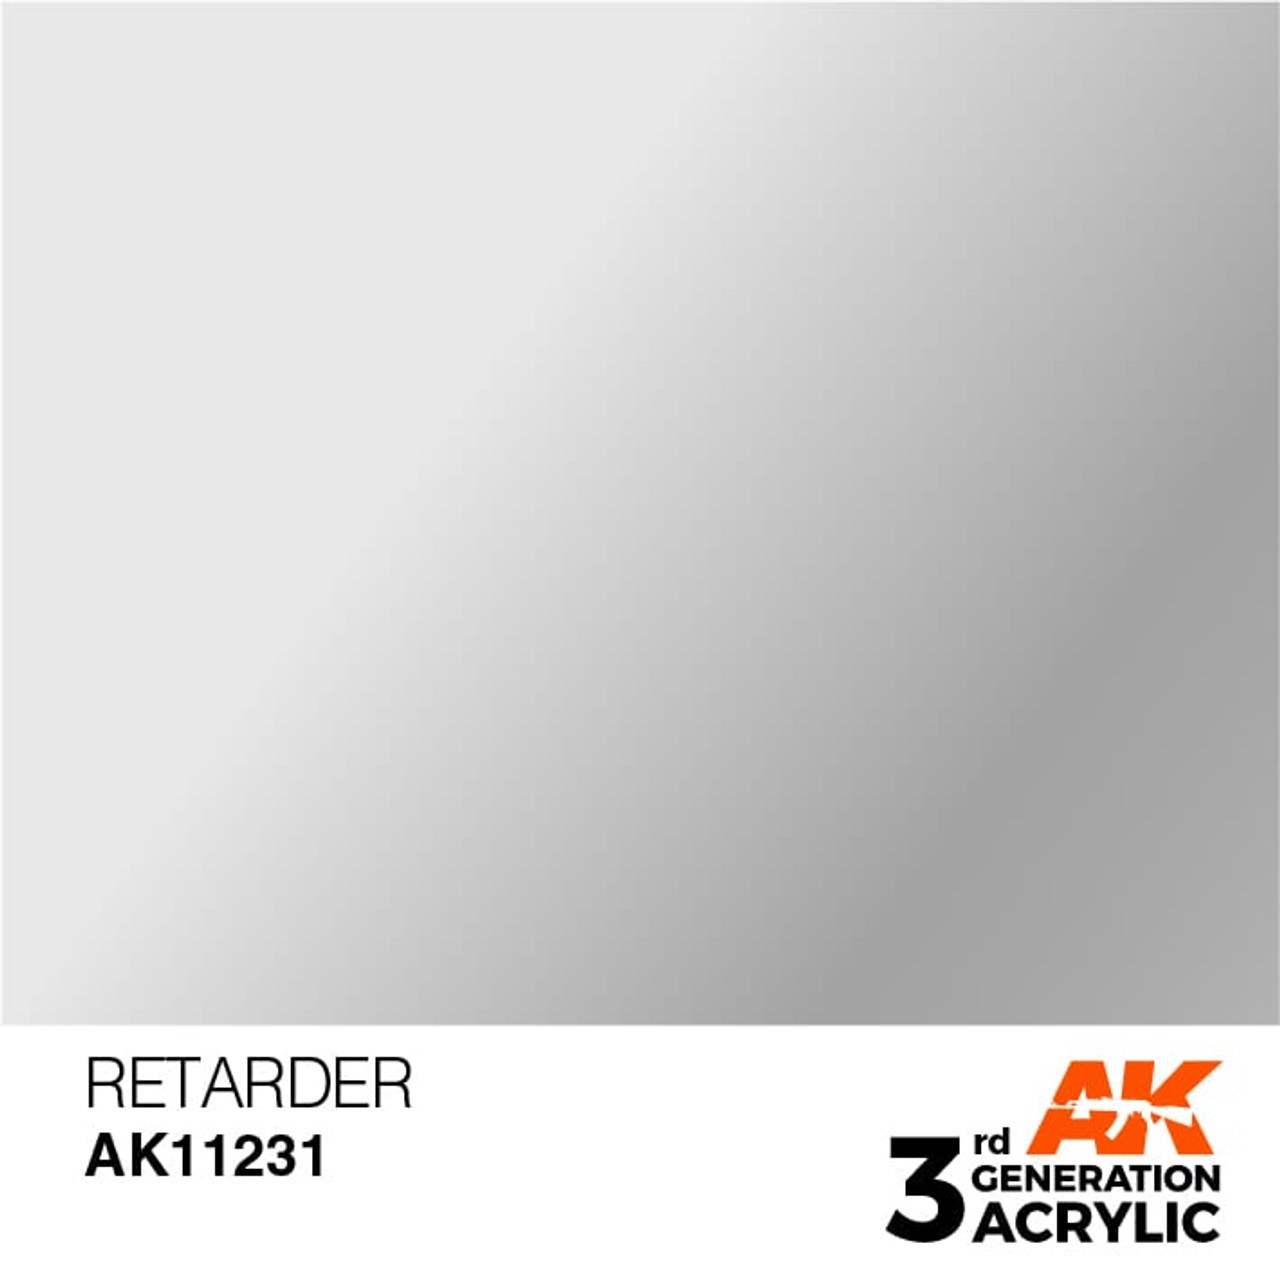 3G 231 -  Retarder - AK11231